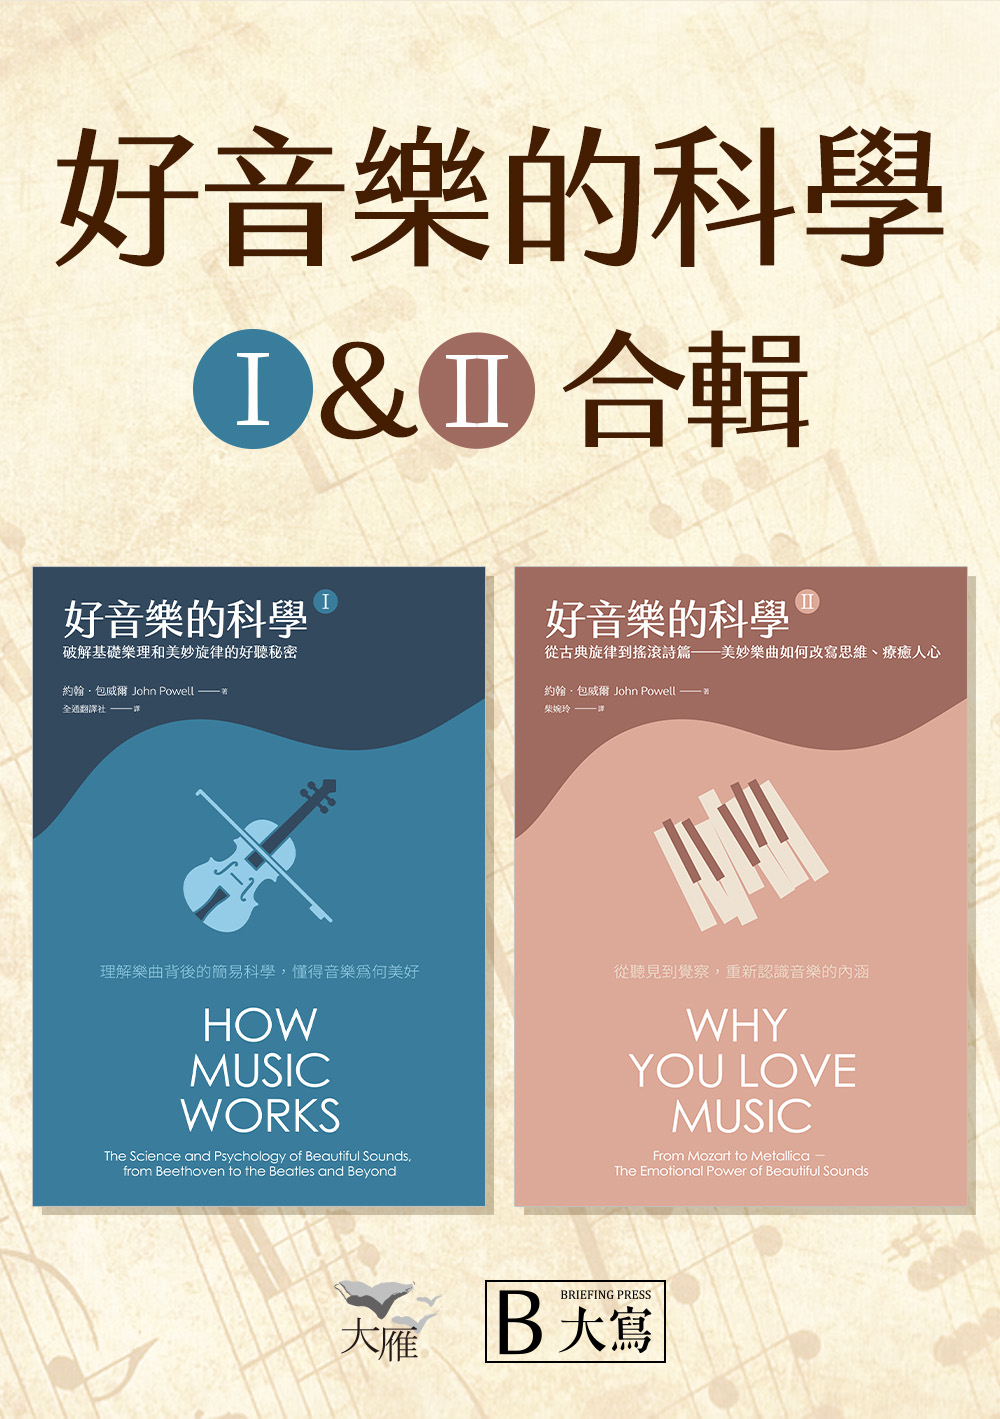 【好音樂的科學套書】(二版)(兩冊)：《好音樂的科學I(二版)》+《好音樂的科學II(二版)》 (電子書)